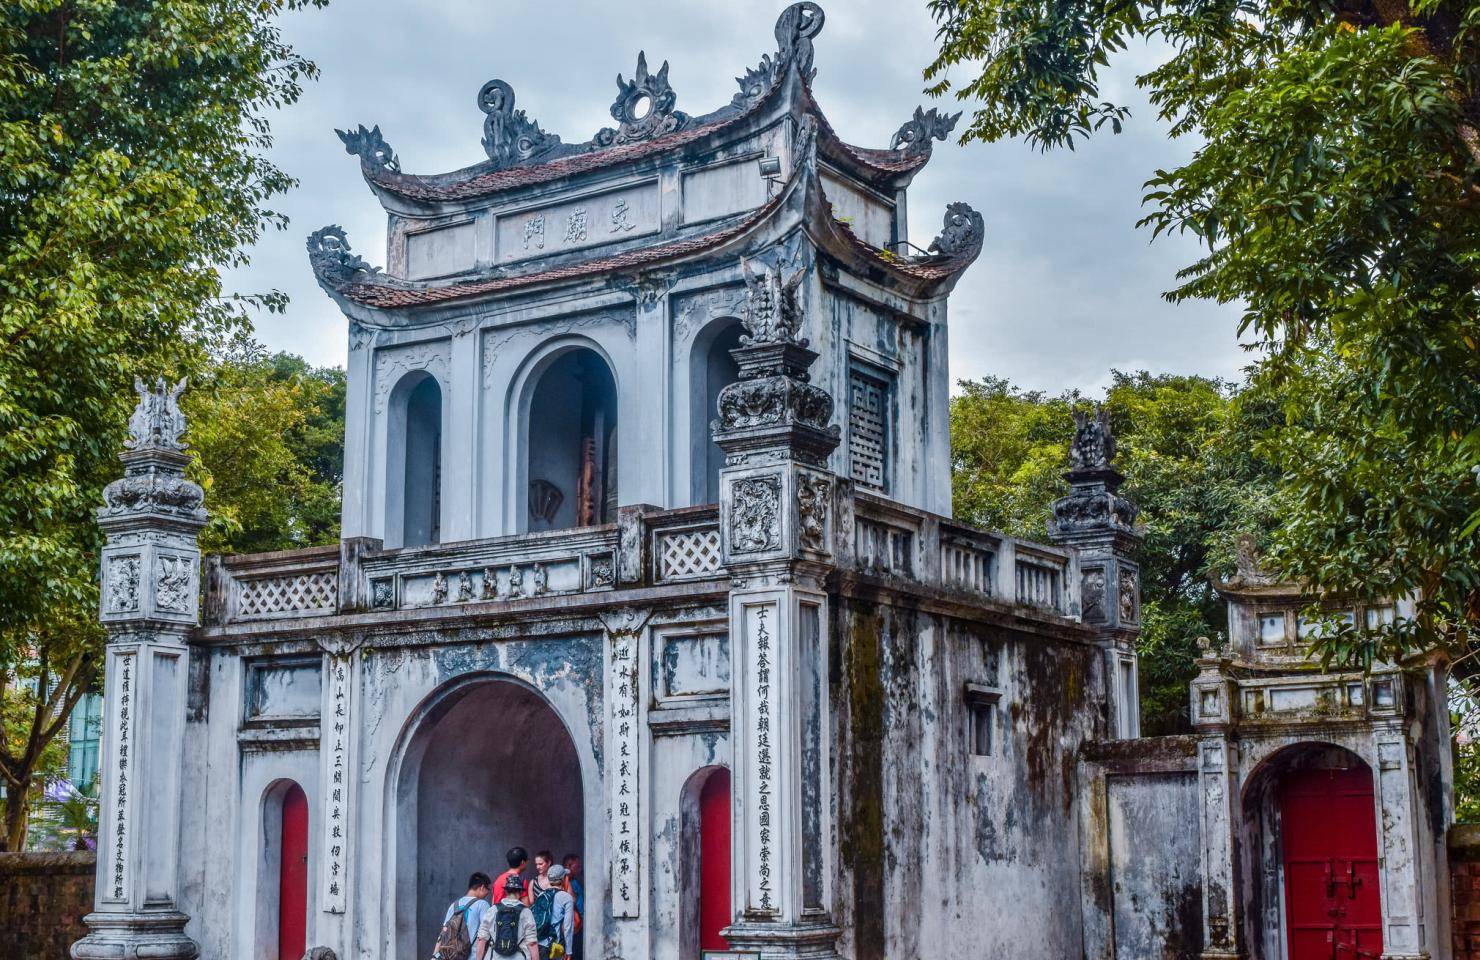 越南此景仿建中国文庙, 竟成世界著名旅游景点, 门票不到10元